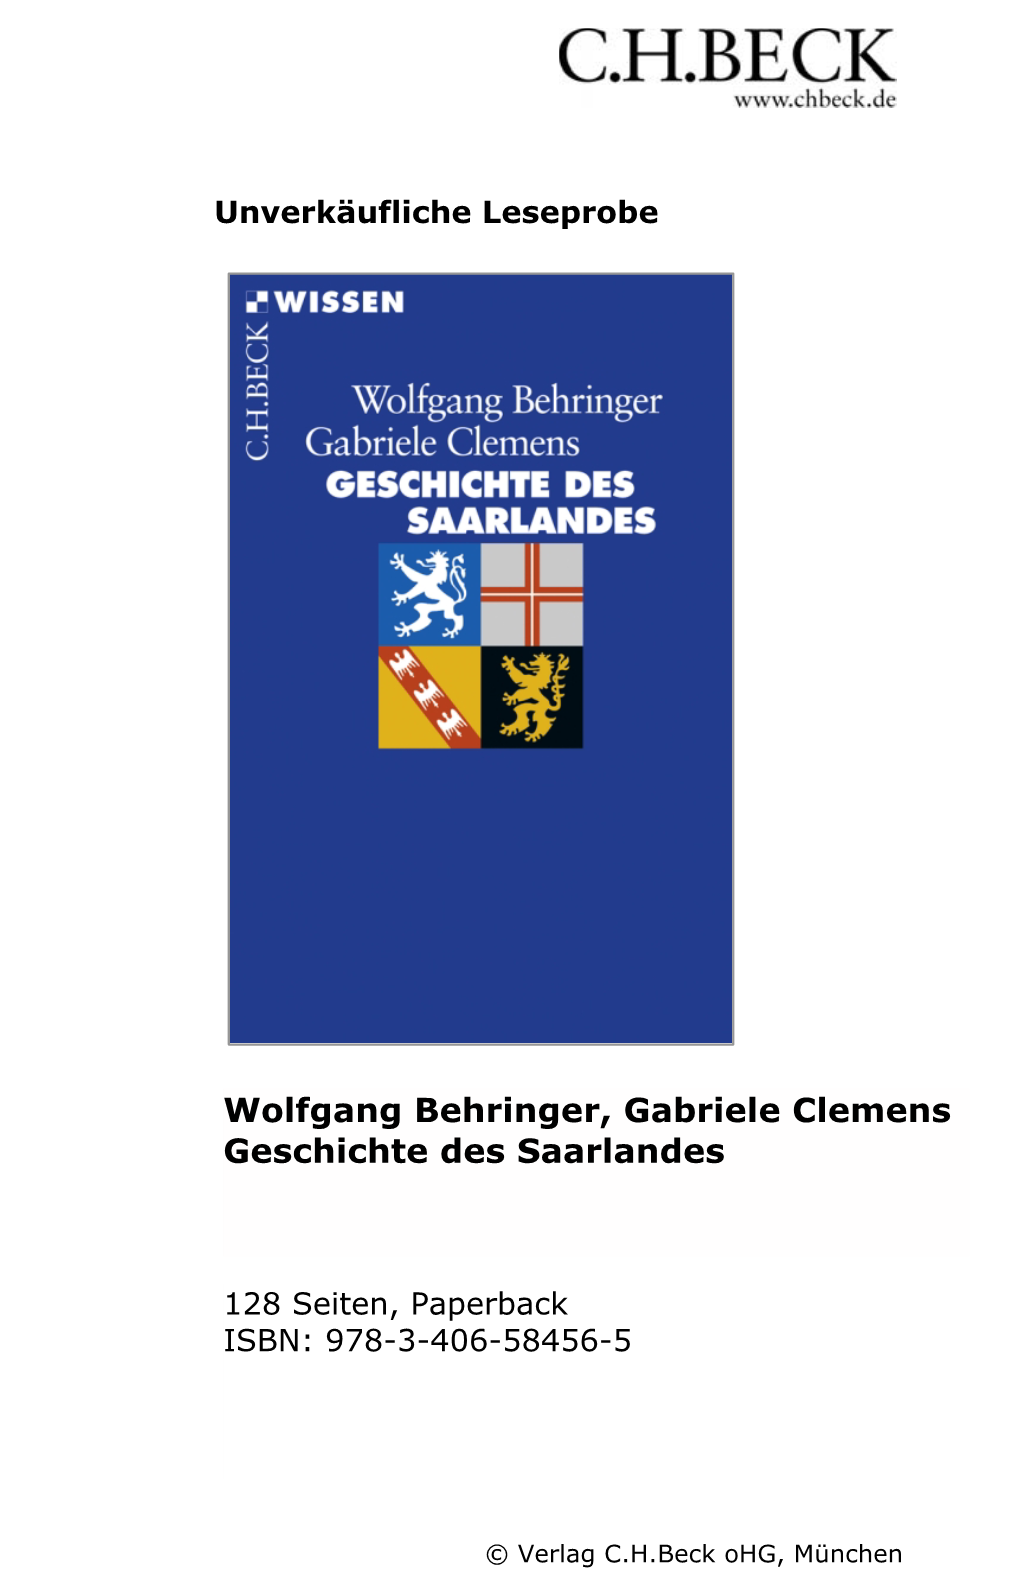 Wolfgang Behringer, Gabriele Clemens Geschichte Des Saarlandes